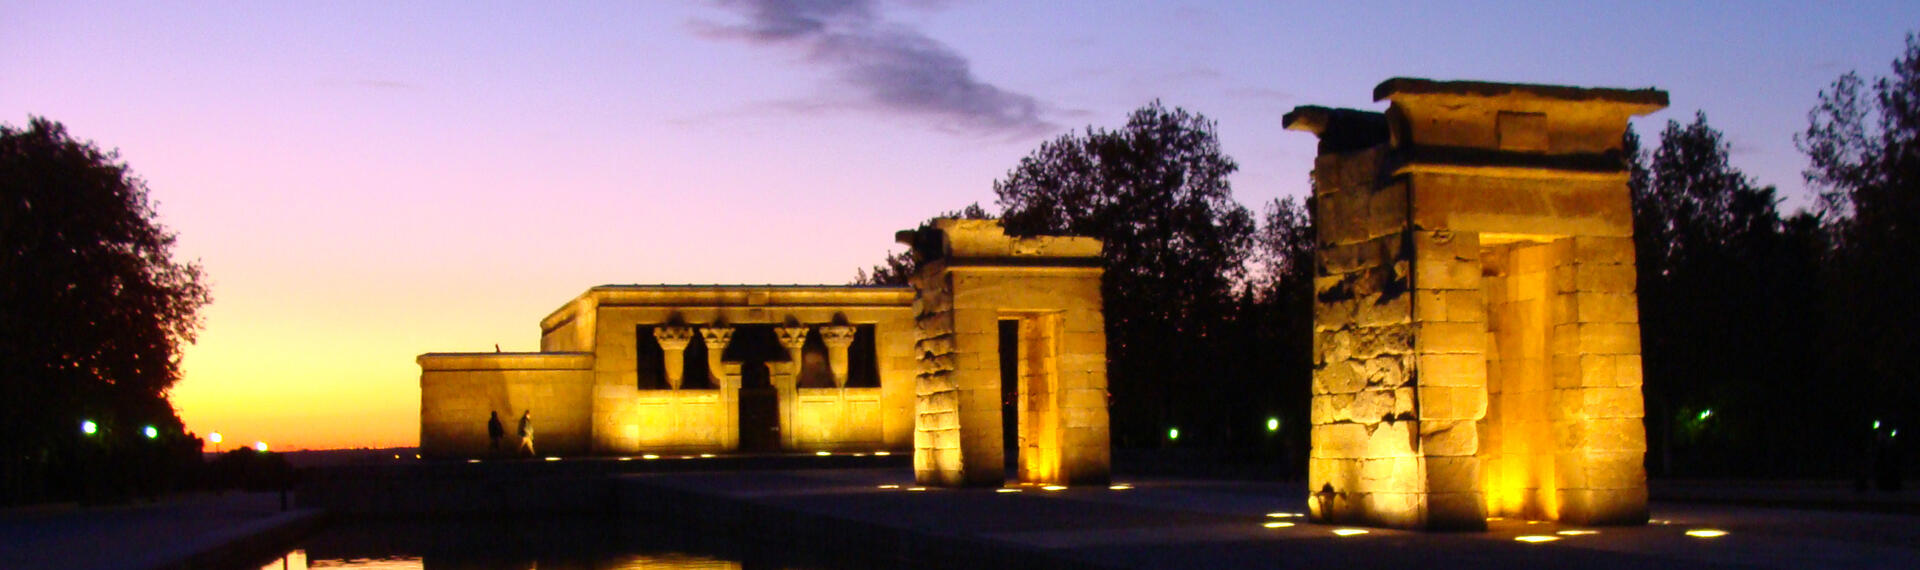 Temple of Debod, Madrid